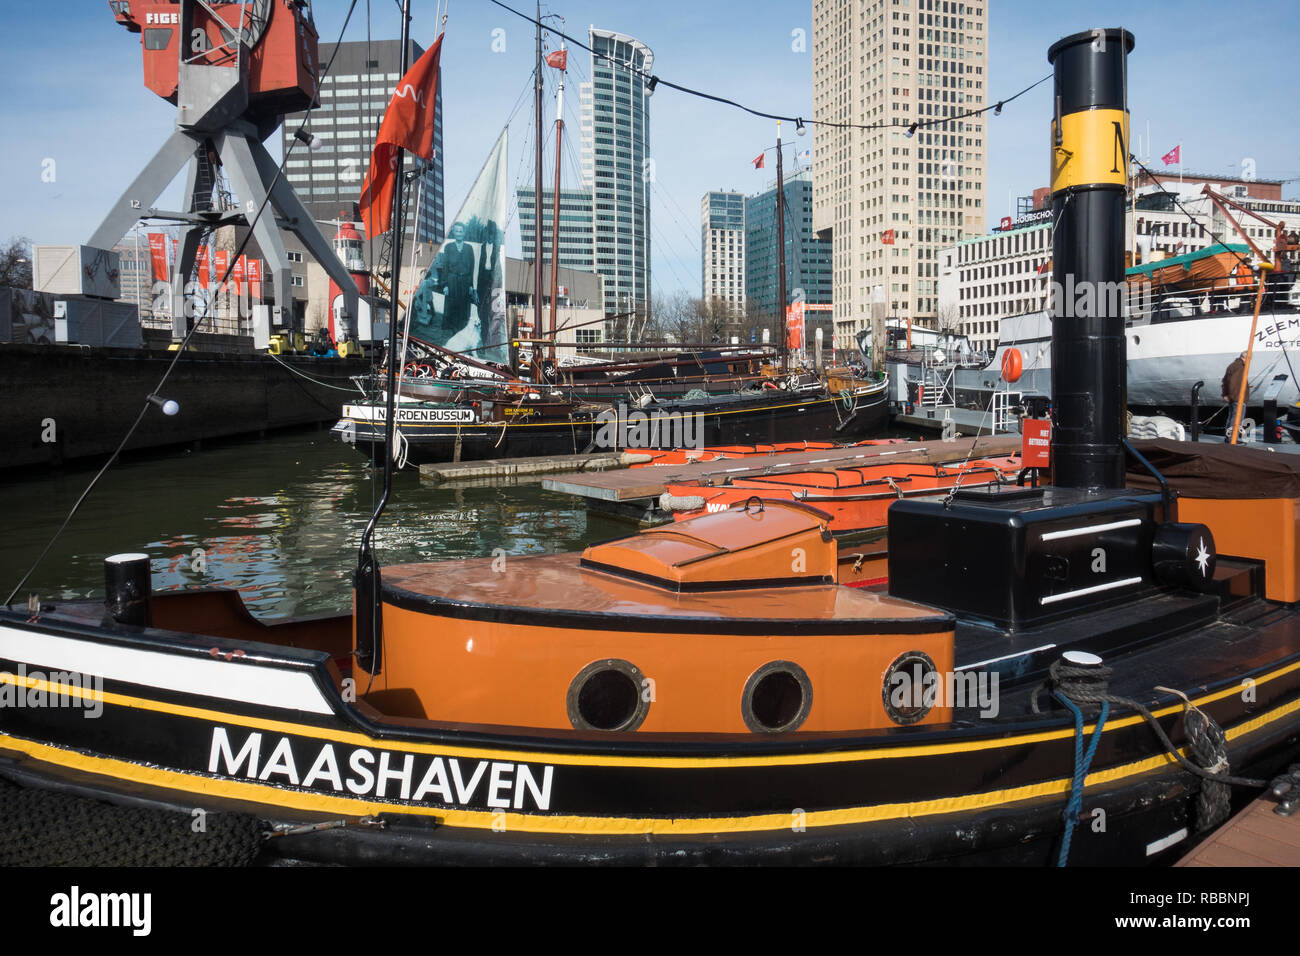 Maashaven Rotterdam, Maritiem museum Rotterdam. Stock Photo